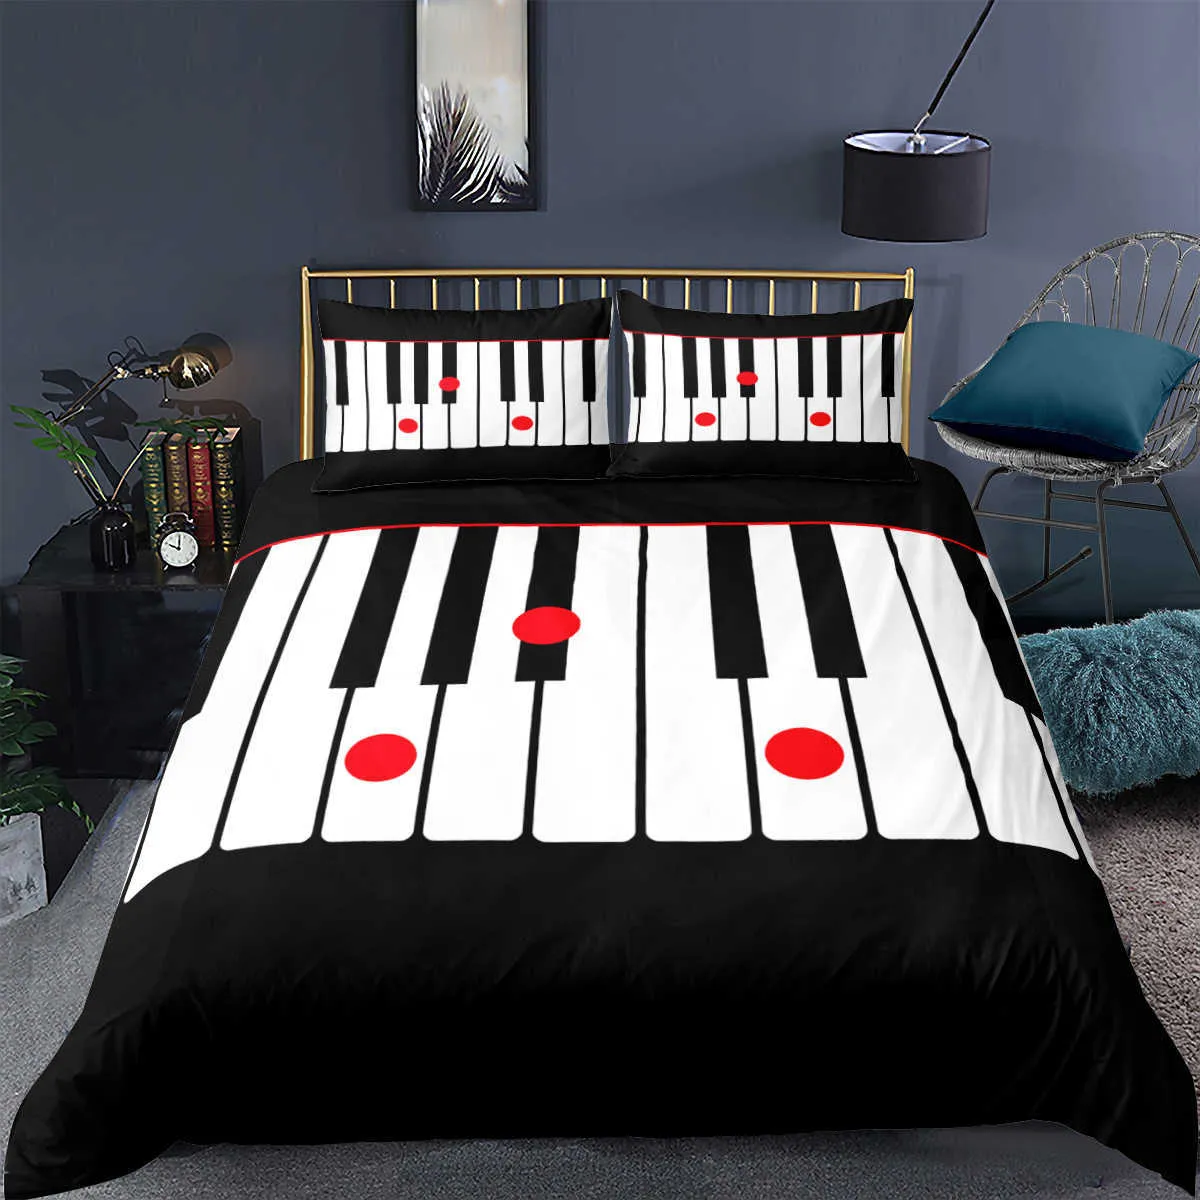 ピアノの音楽ノート印刷された寝具セット3Dラグジュアリーベッドセット掛け布団大人の子供用布団カバー枕カバーツインクイーンキングサイズh09134508075